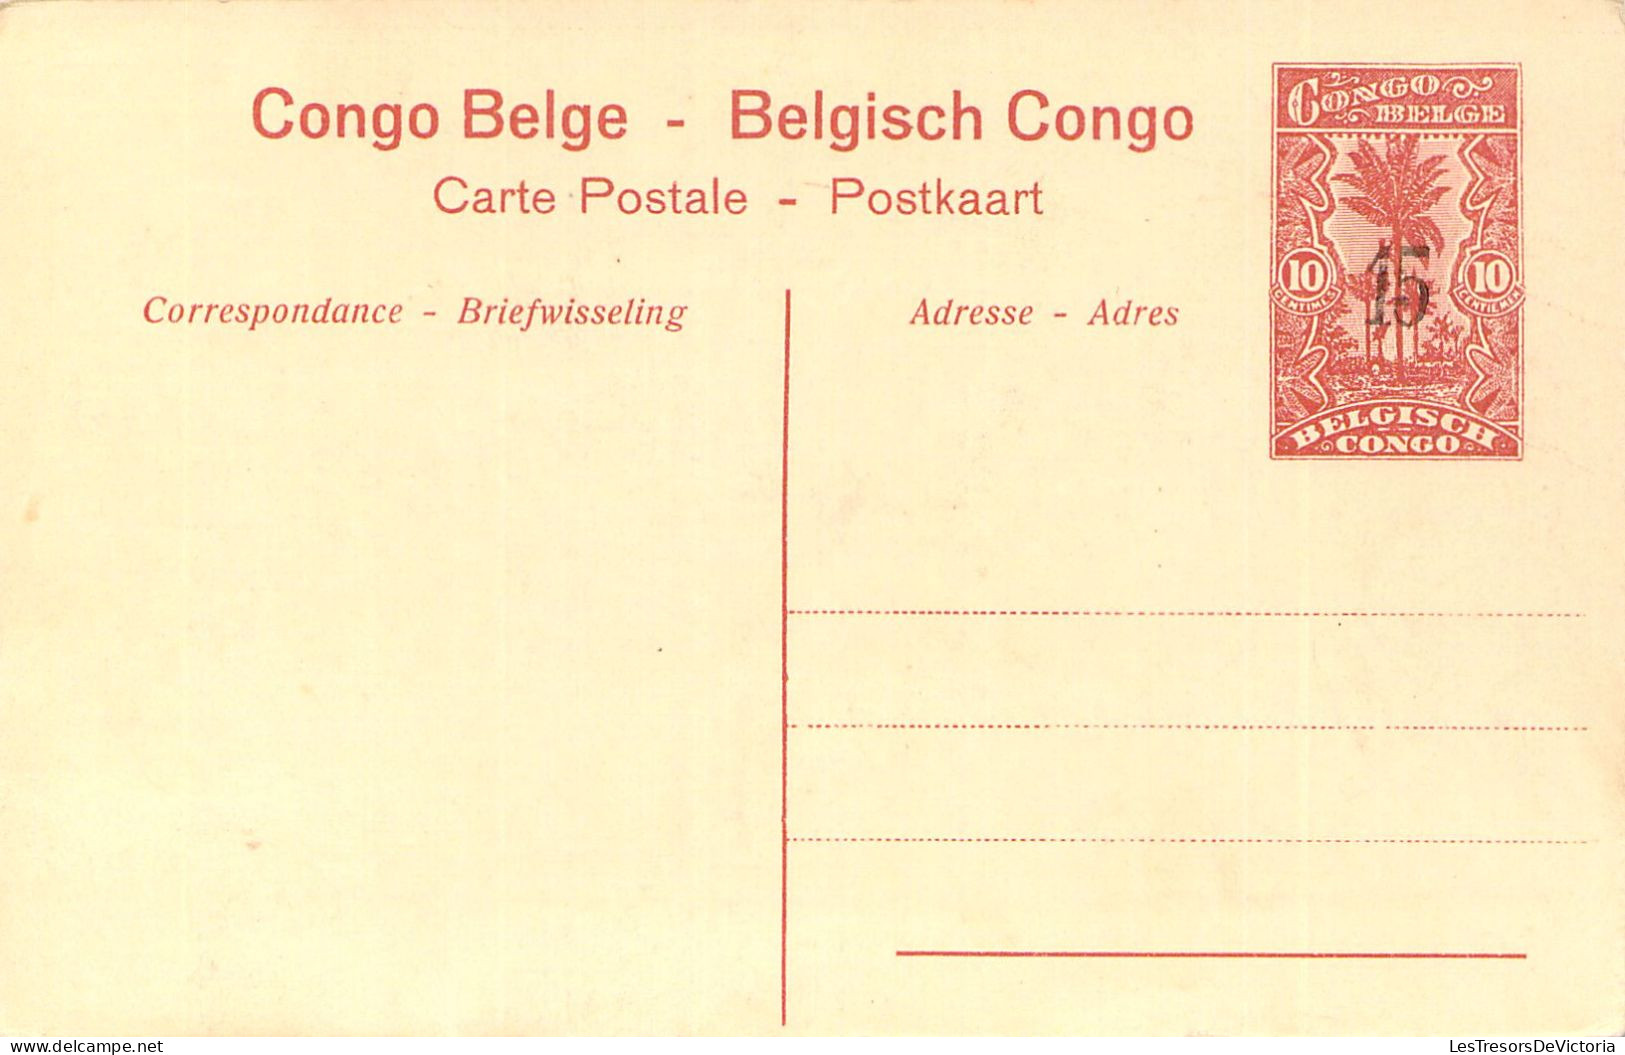 CONGO BELGE - PONTHIERVILLE - Intérieur De La Station - Carte Postale Ancienne - Congo Belga